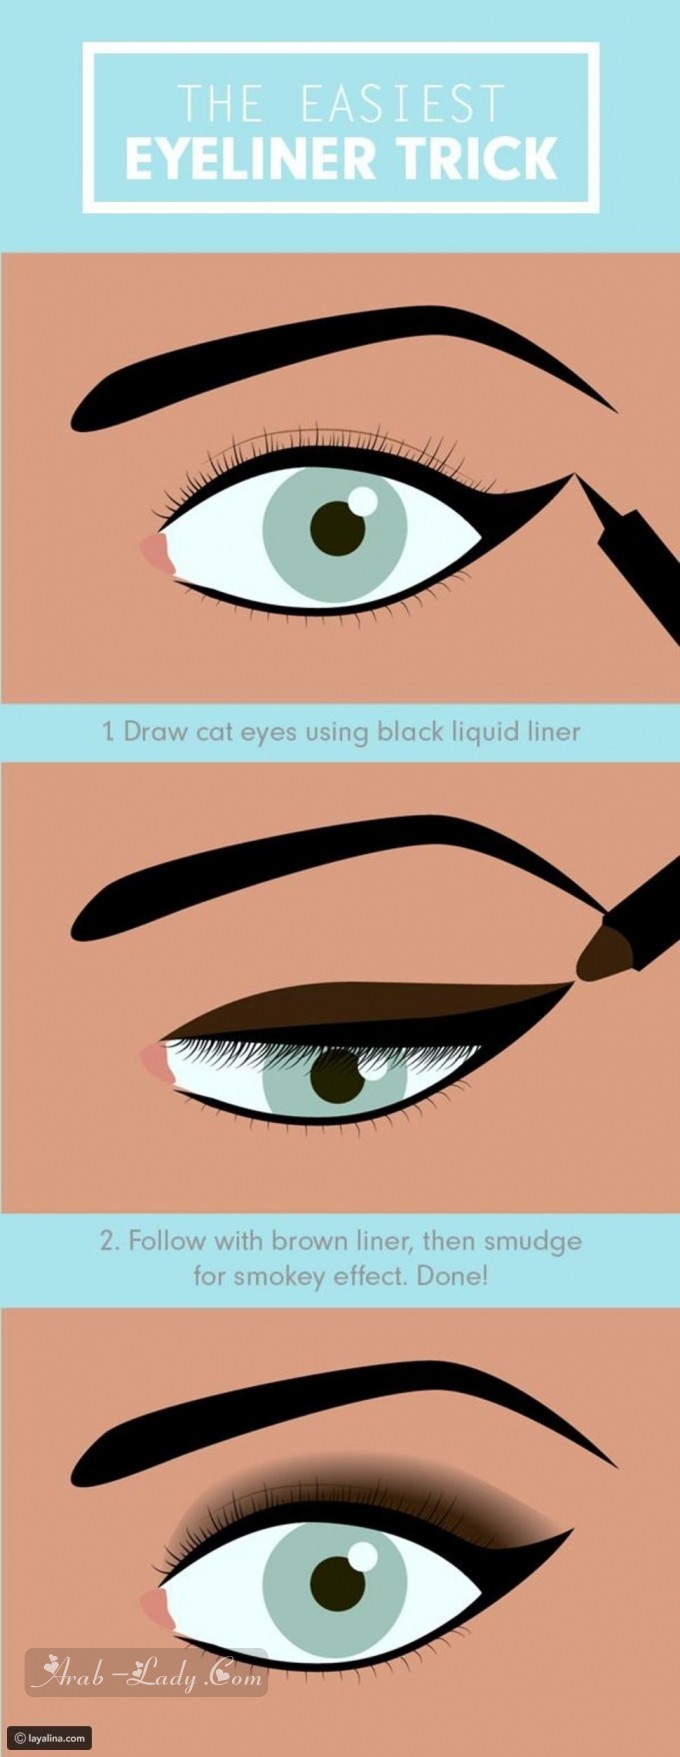 طريقة تكبير العيون في دقائق بواسطة المكياج